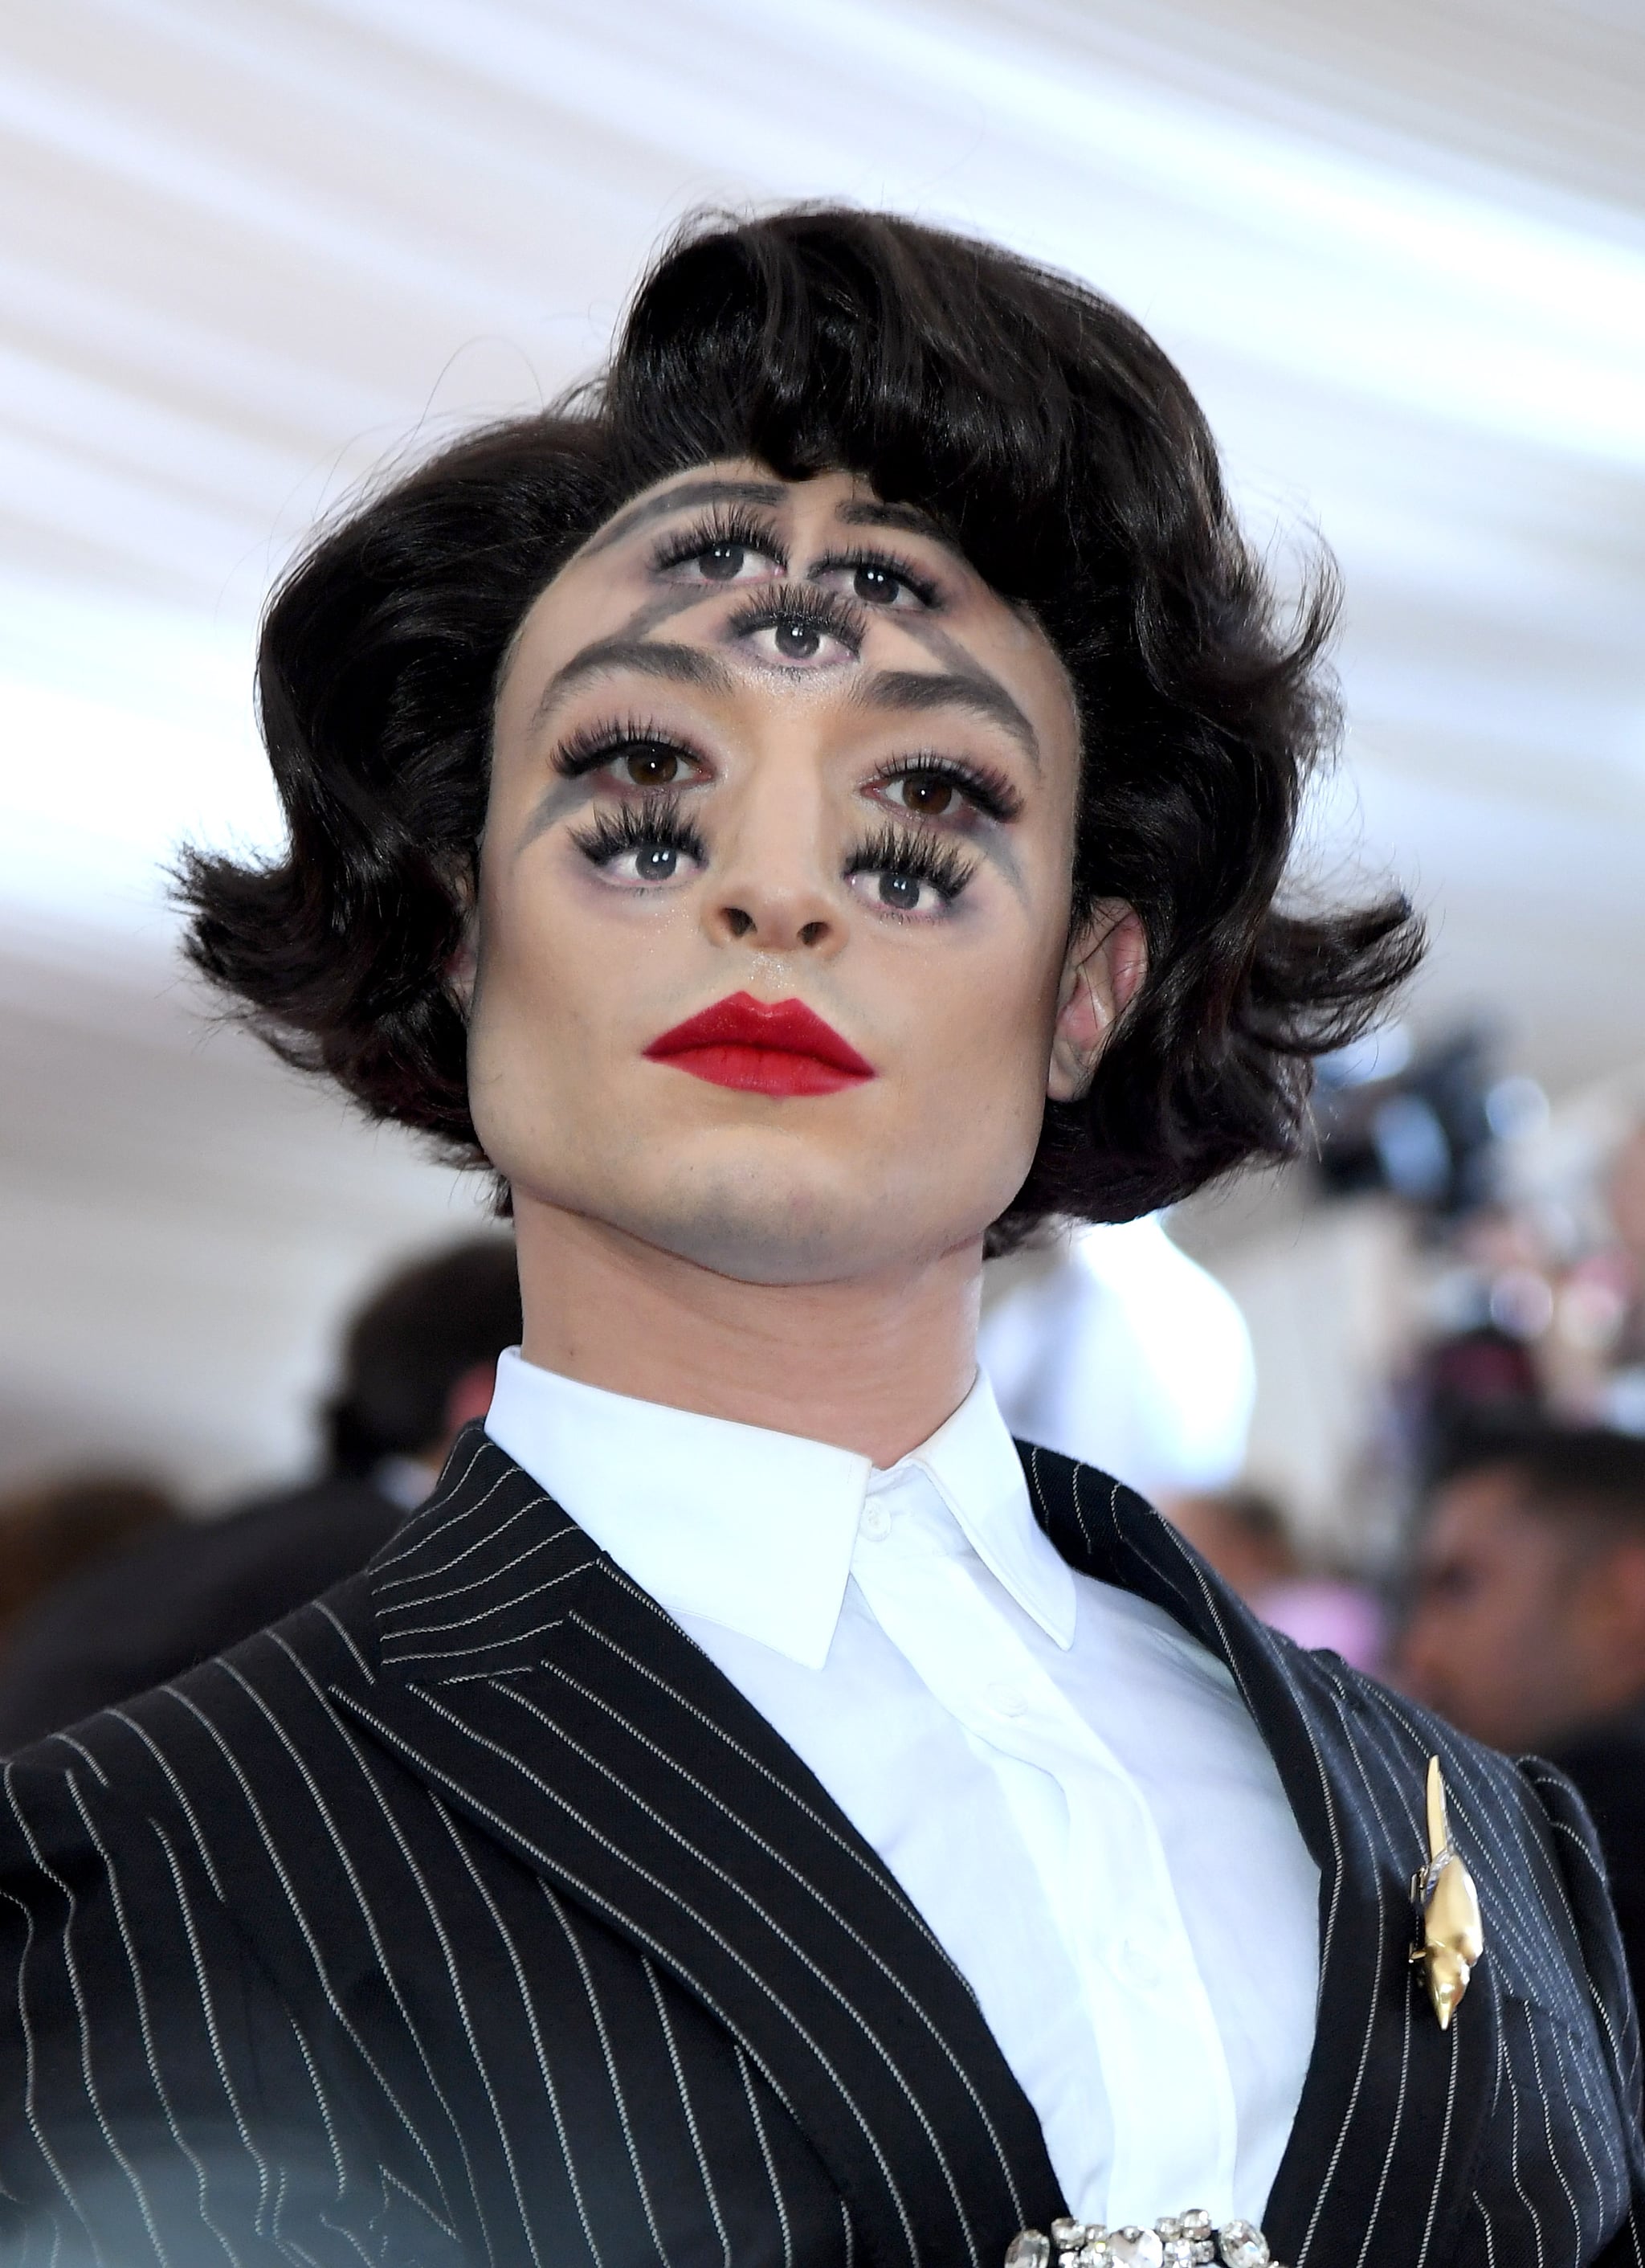 Ezra Miller Wore Multiple Sets of Eyes for His Met Gala 2019 Makeup